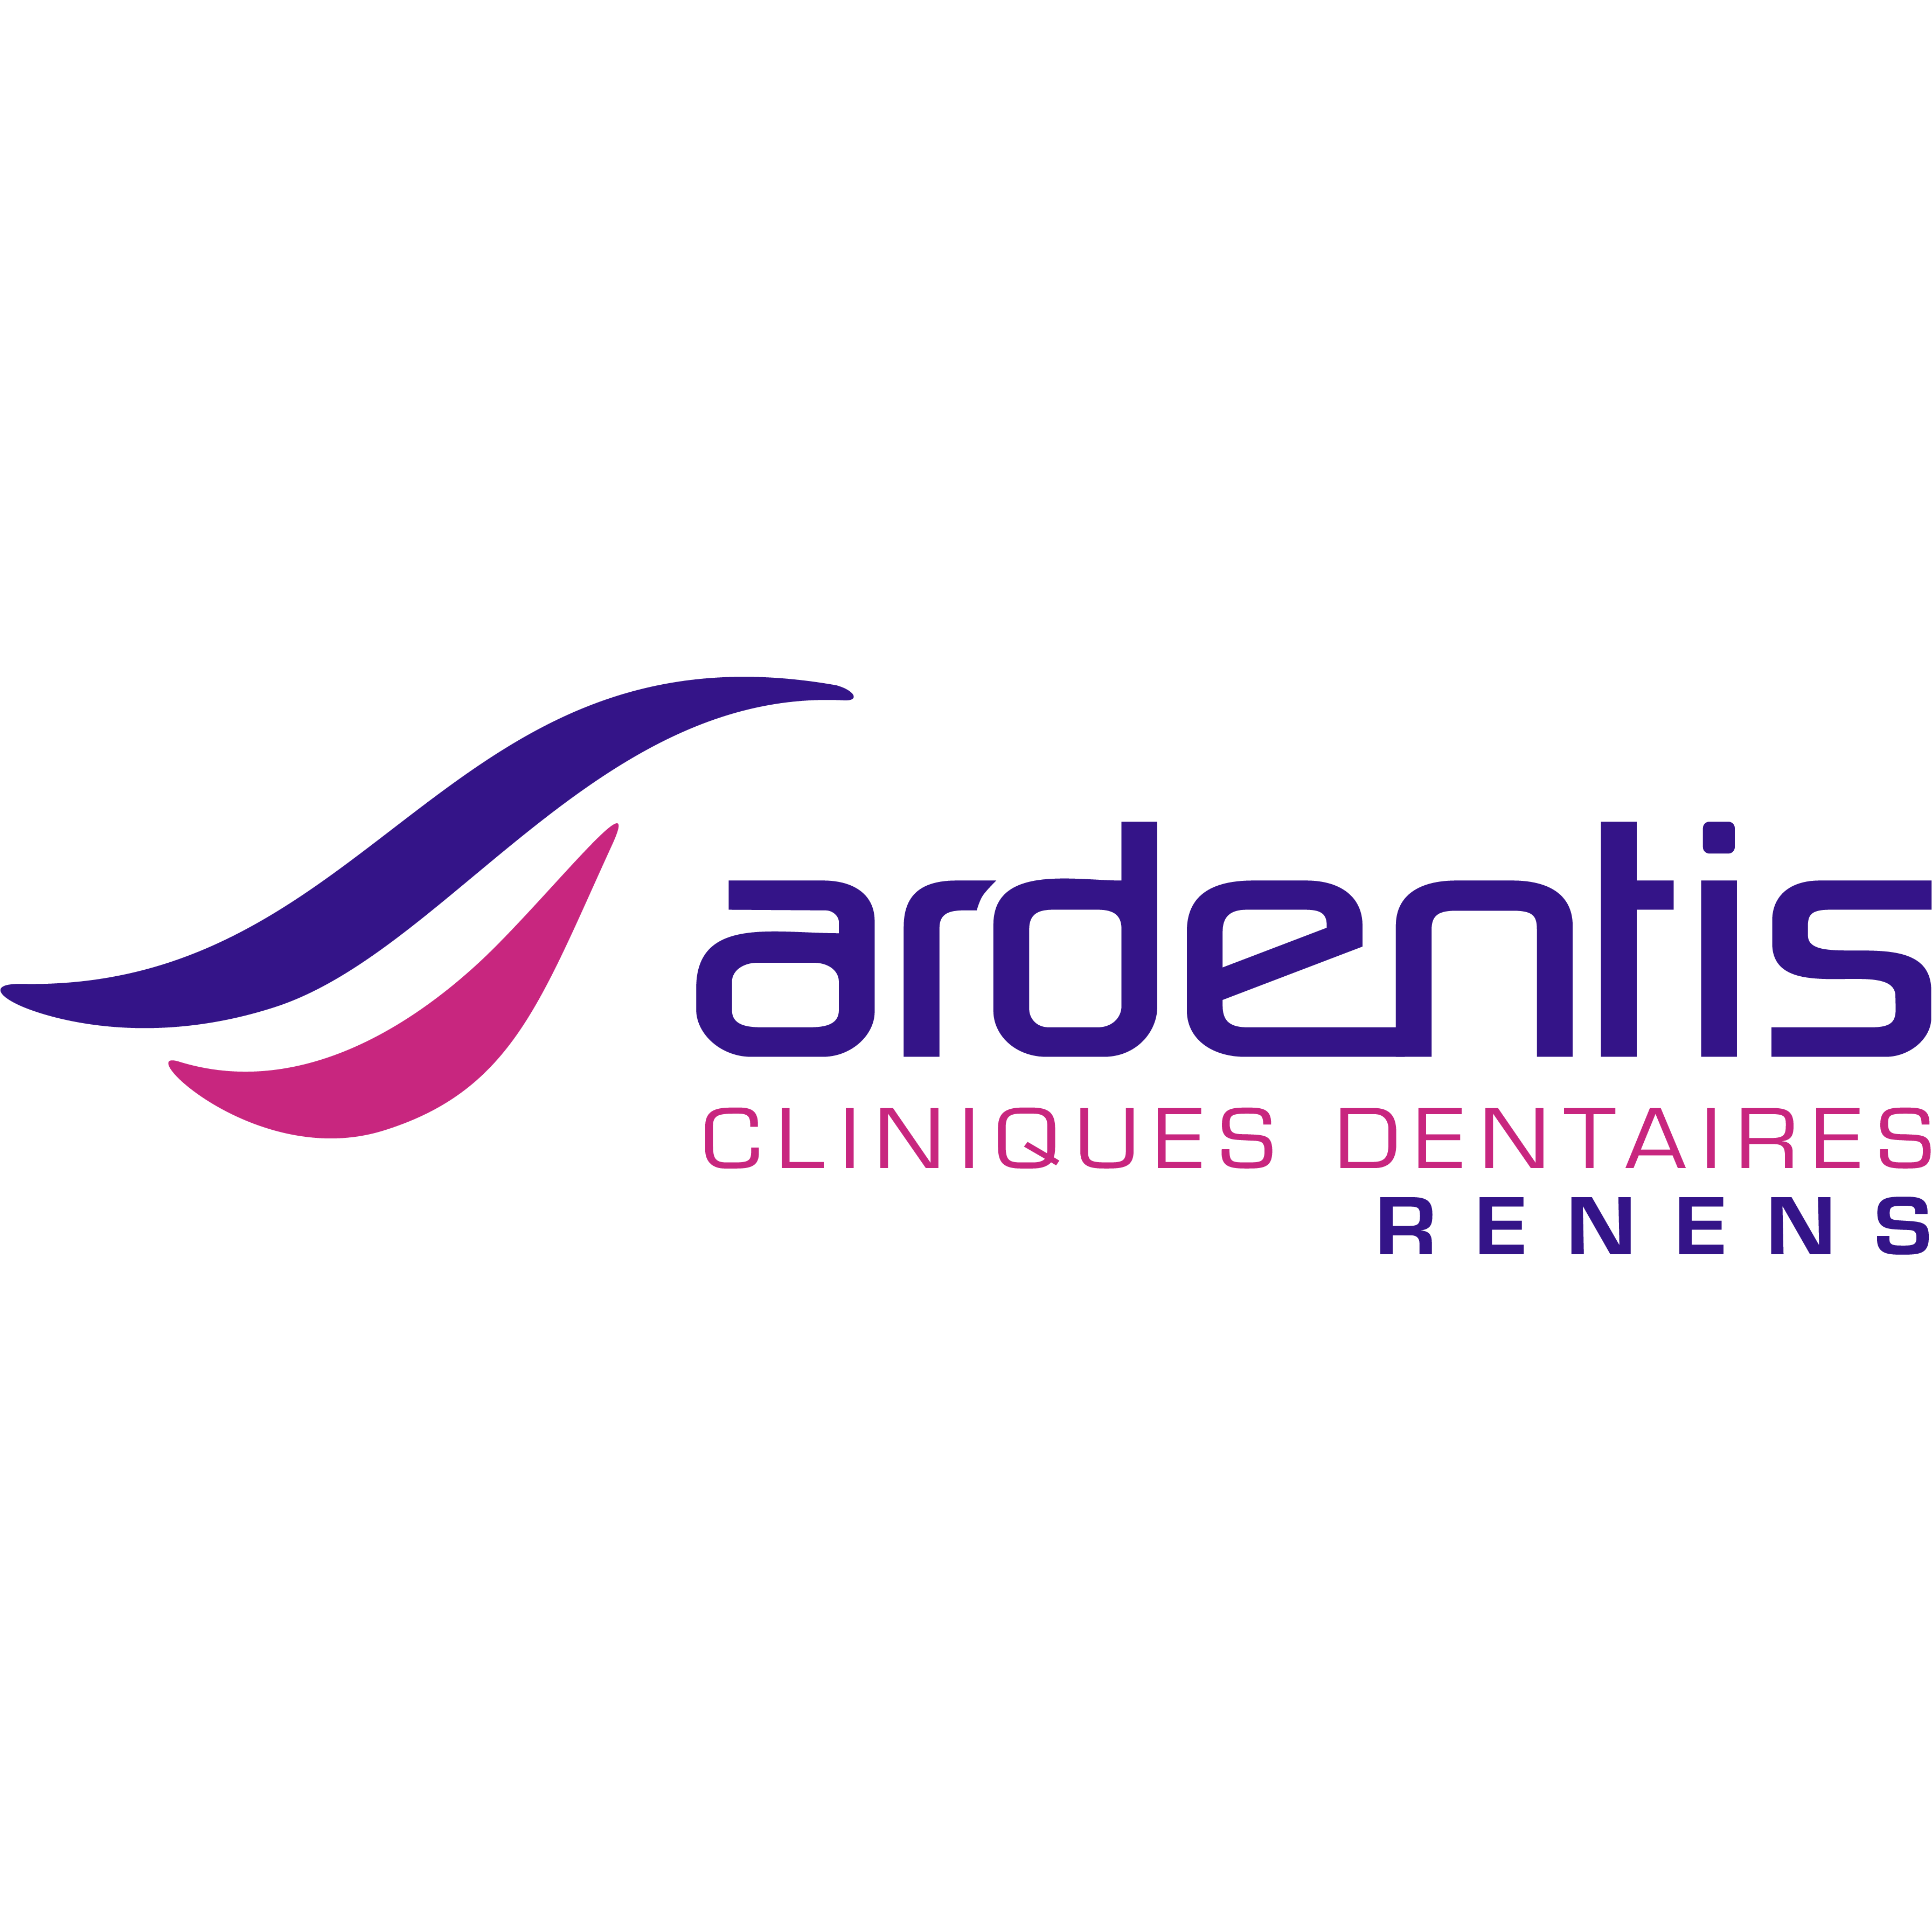 Ardentis Cliniques Dentaires et d'Orthodontie - Renens Logo